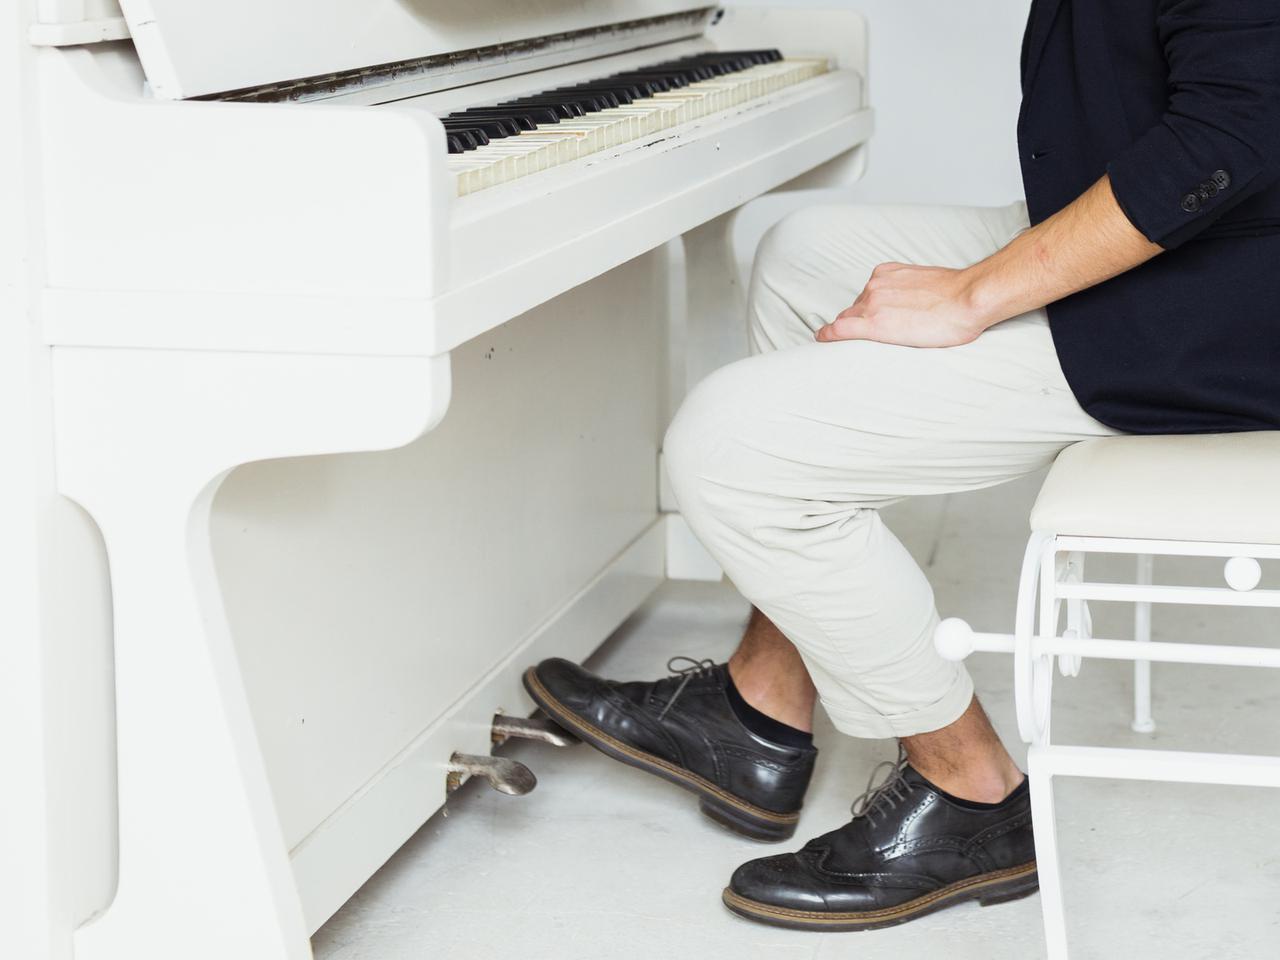 Зачем нужны педали на пианино и рояле - Звук